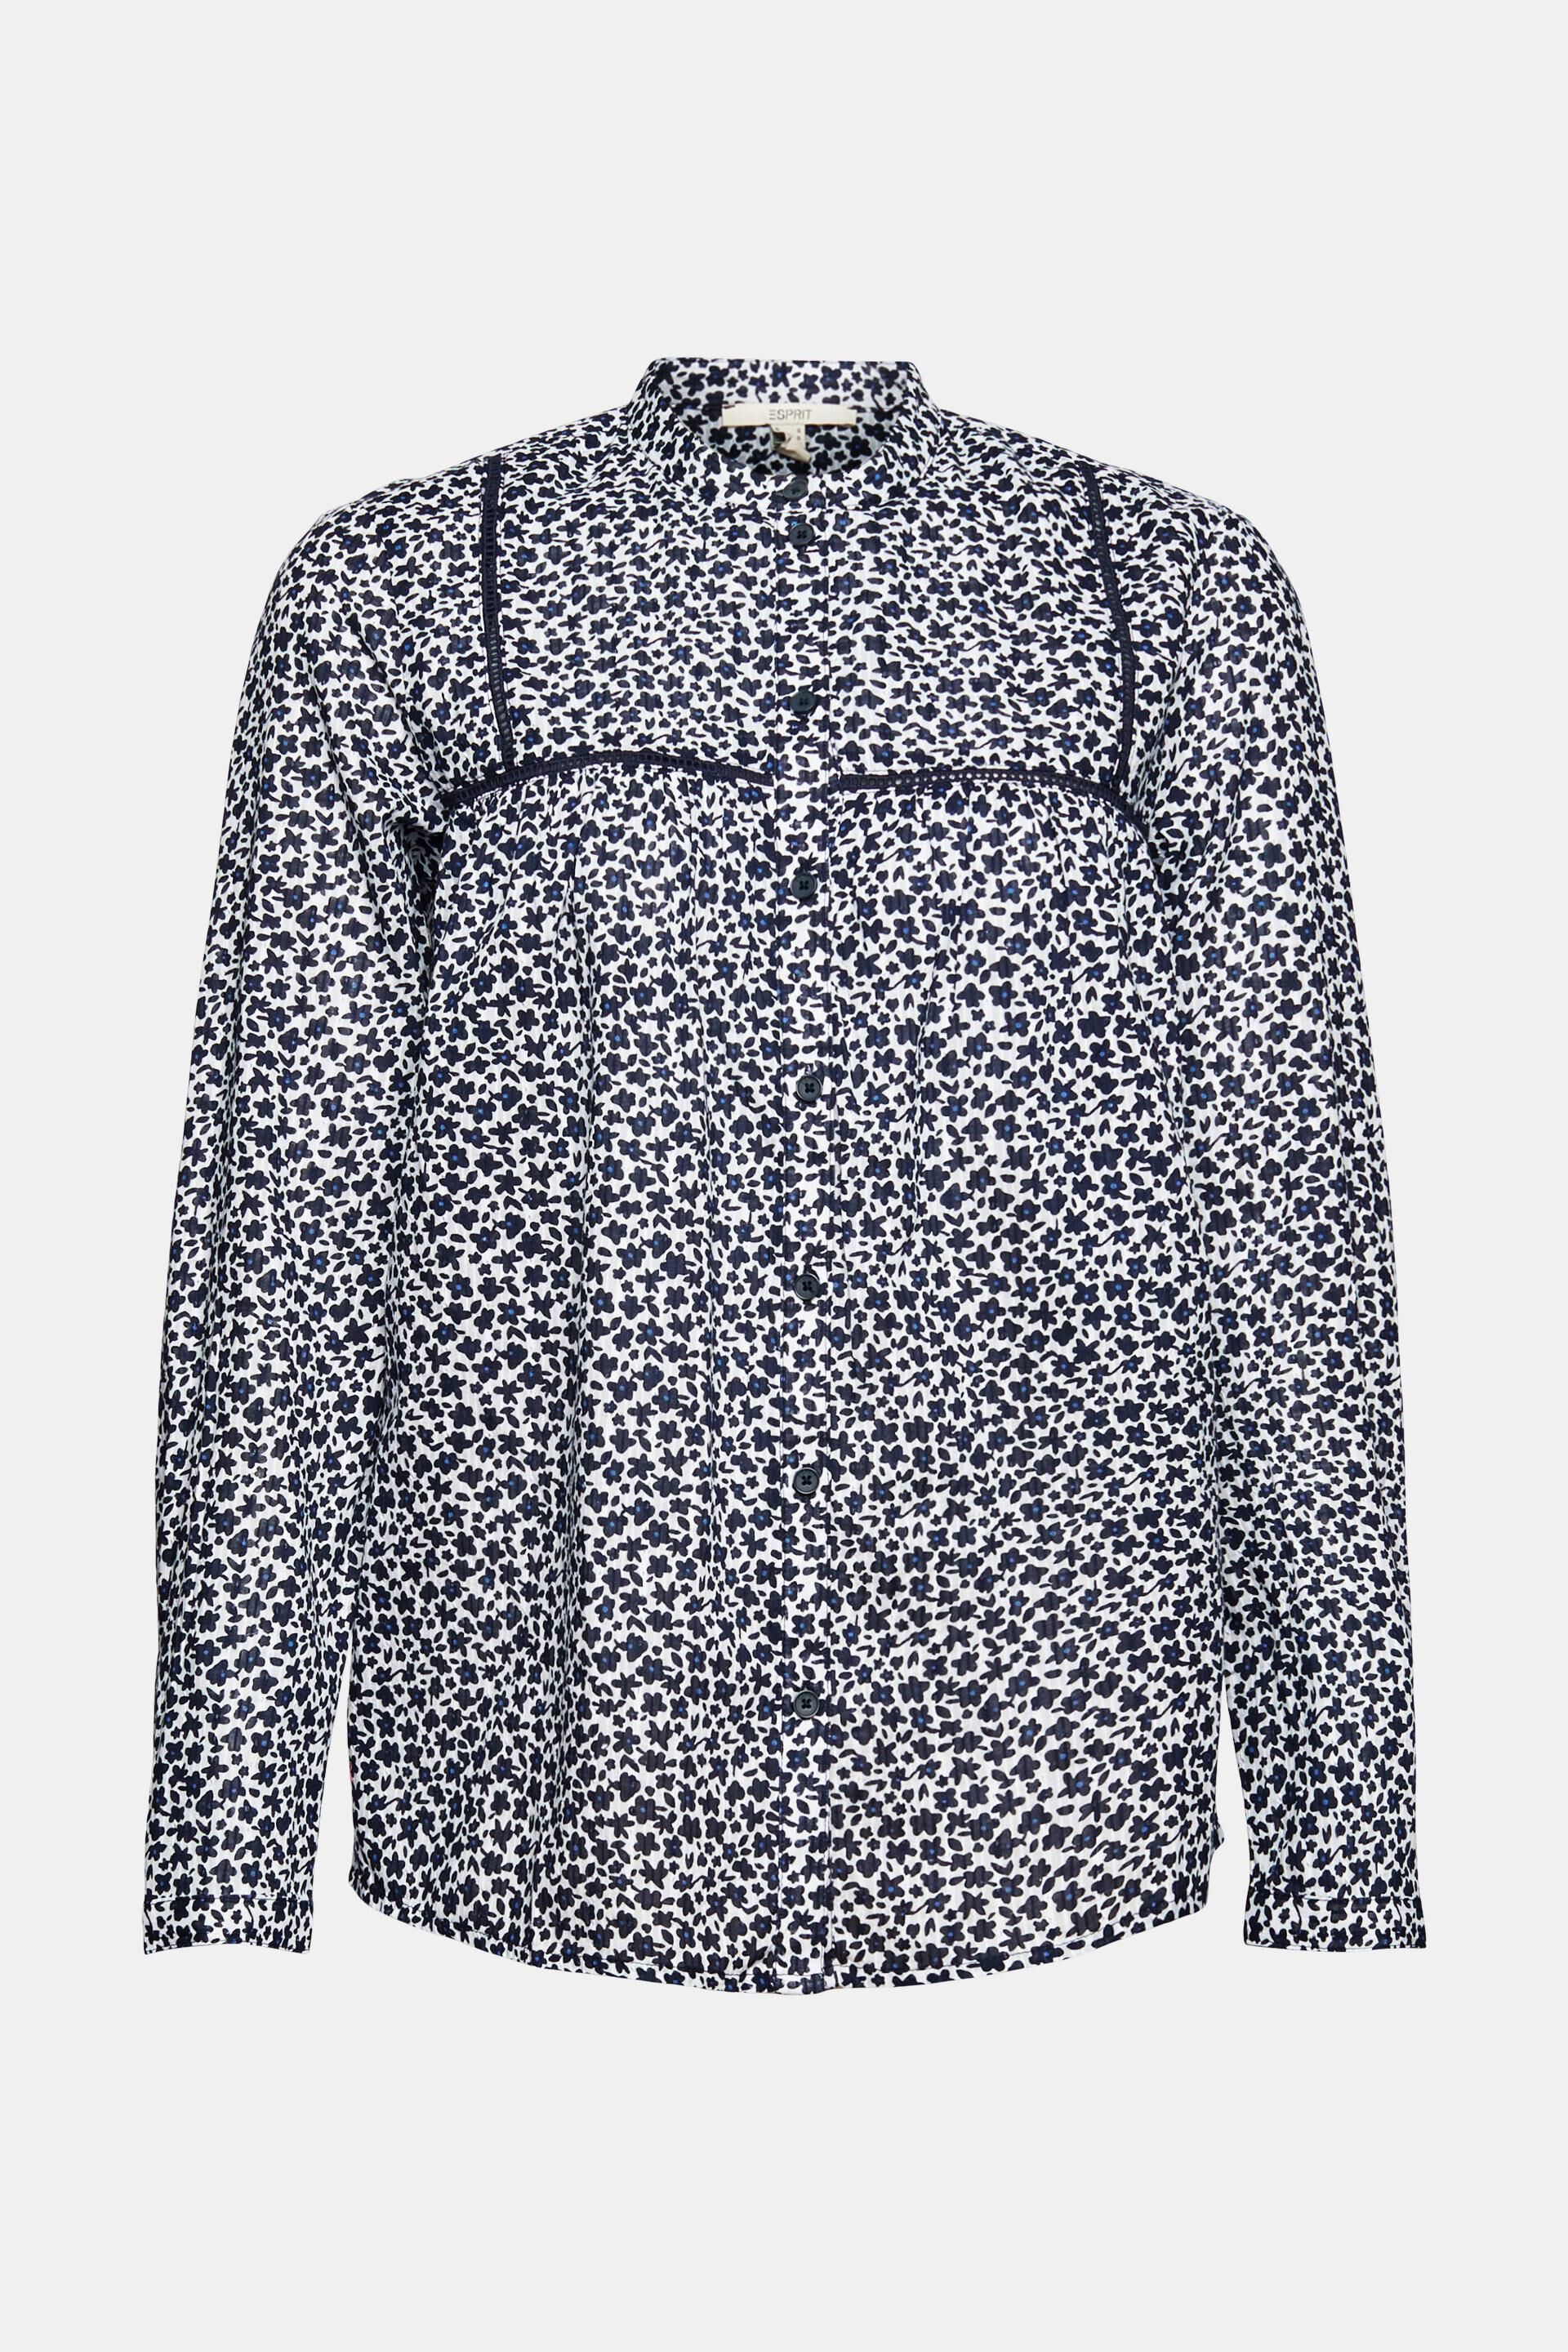 Mode Blouses Slip-over blouses de.corp by Esprit Slip-over blouse abstract patroon klassieke stijl 